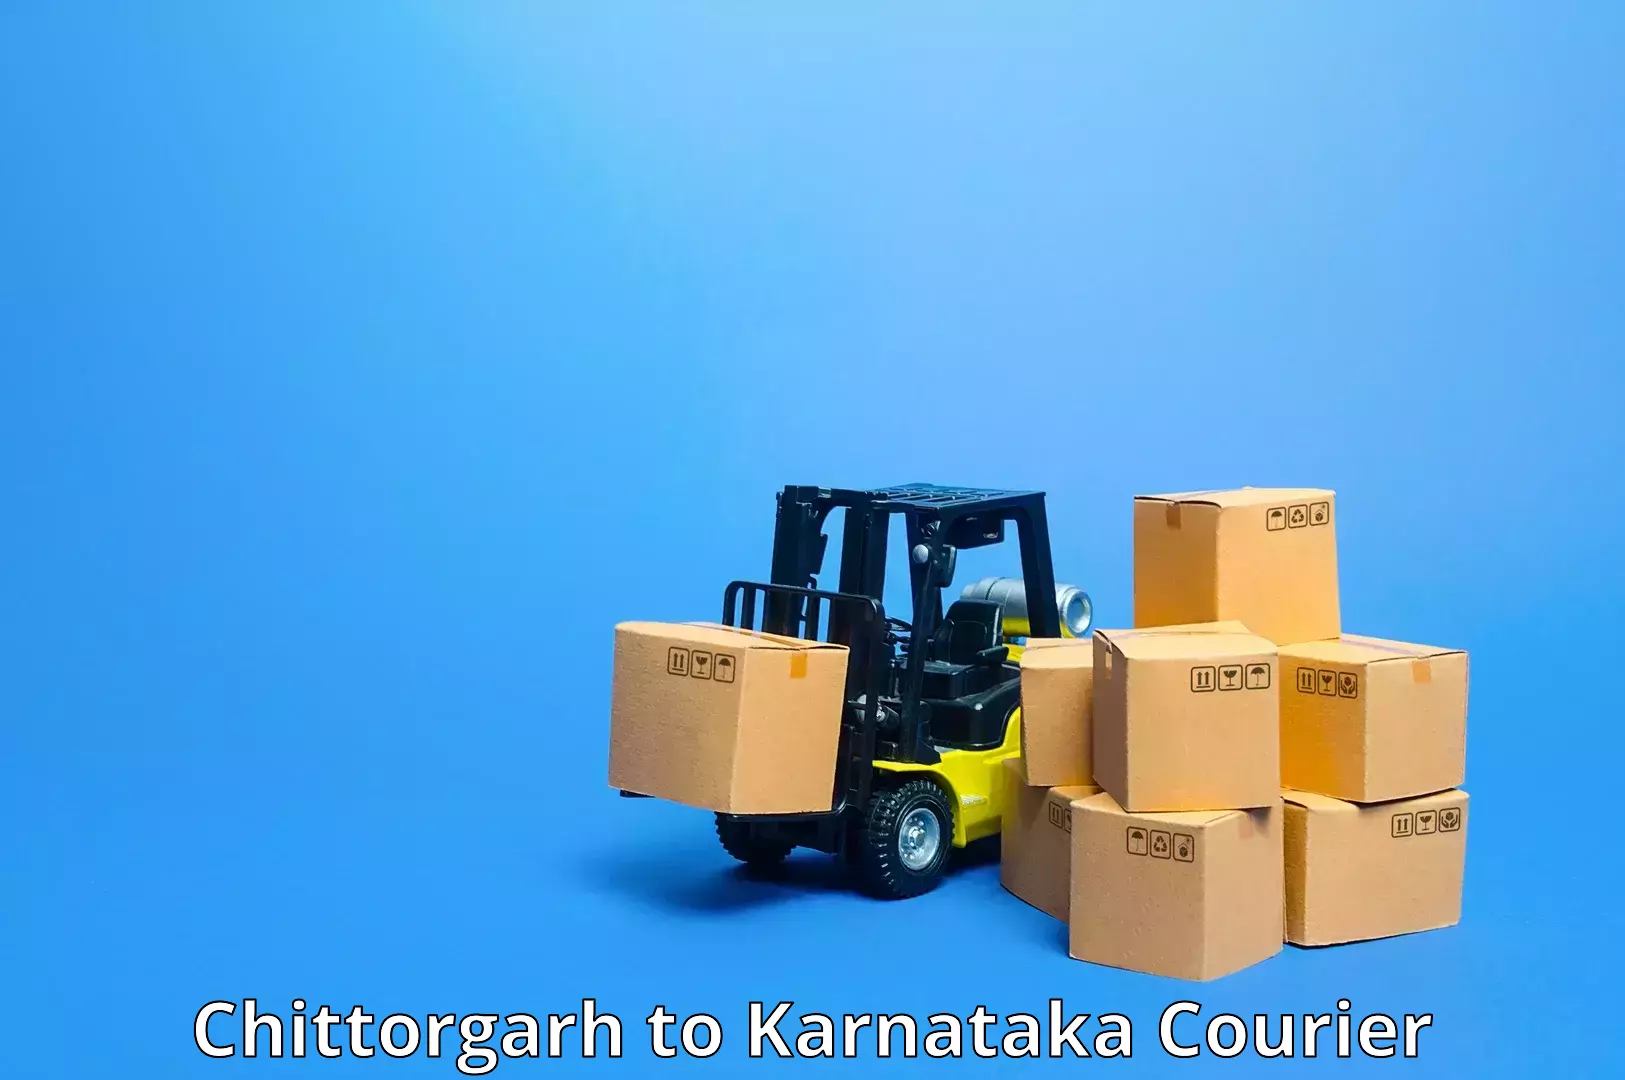 Domestic courier Chittorgarh to Pedapudi